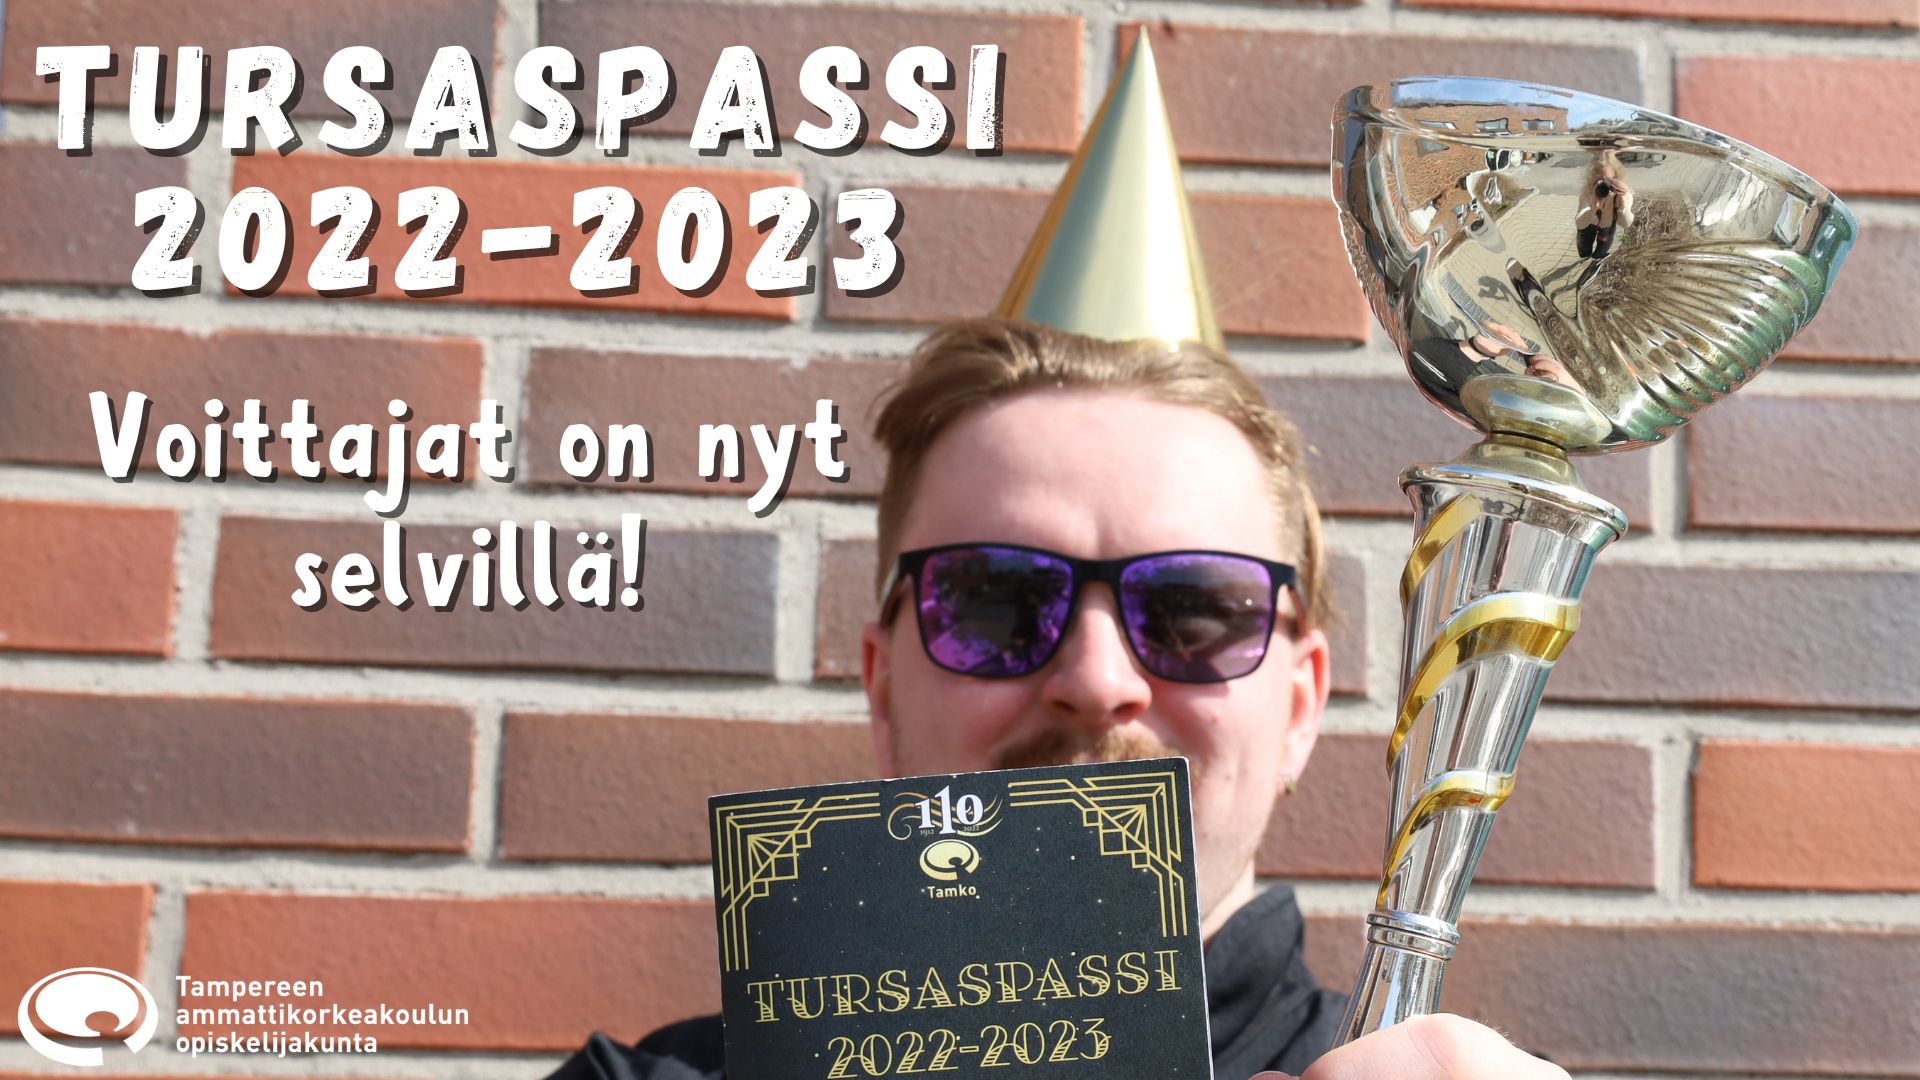 Tursaspassi 2022-2023 winners are here!